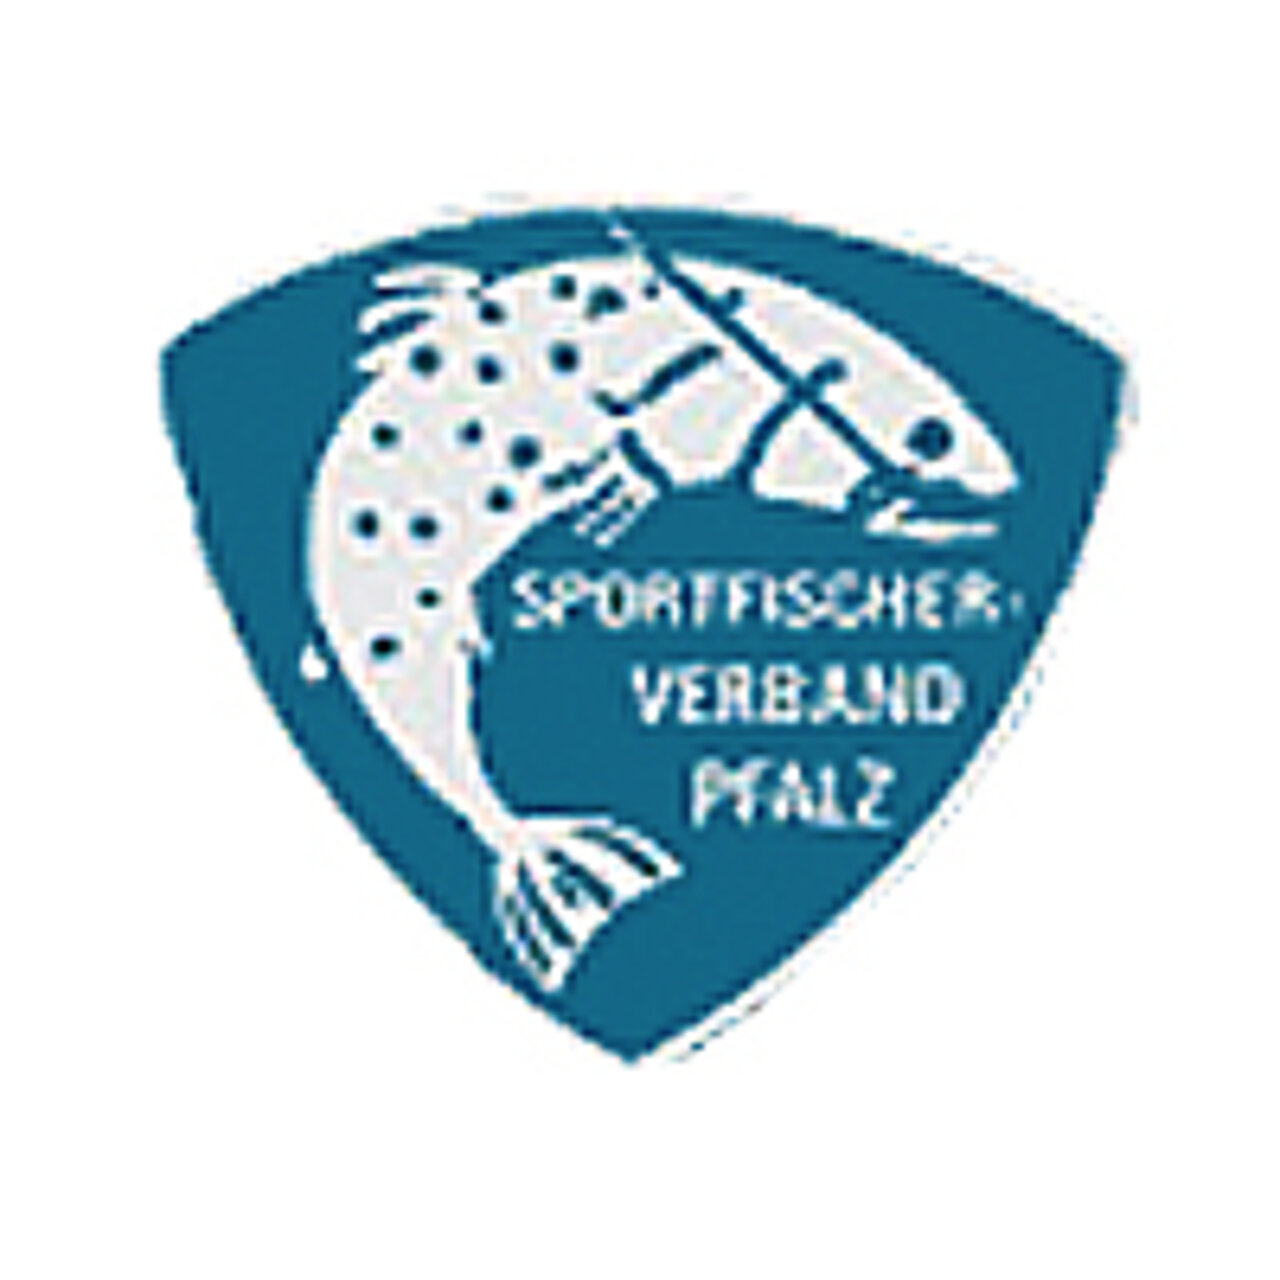 Verbandslogo Sportfischerverband Pfalz e.V.